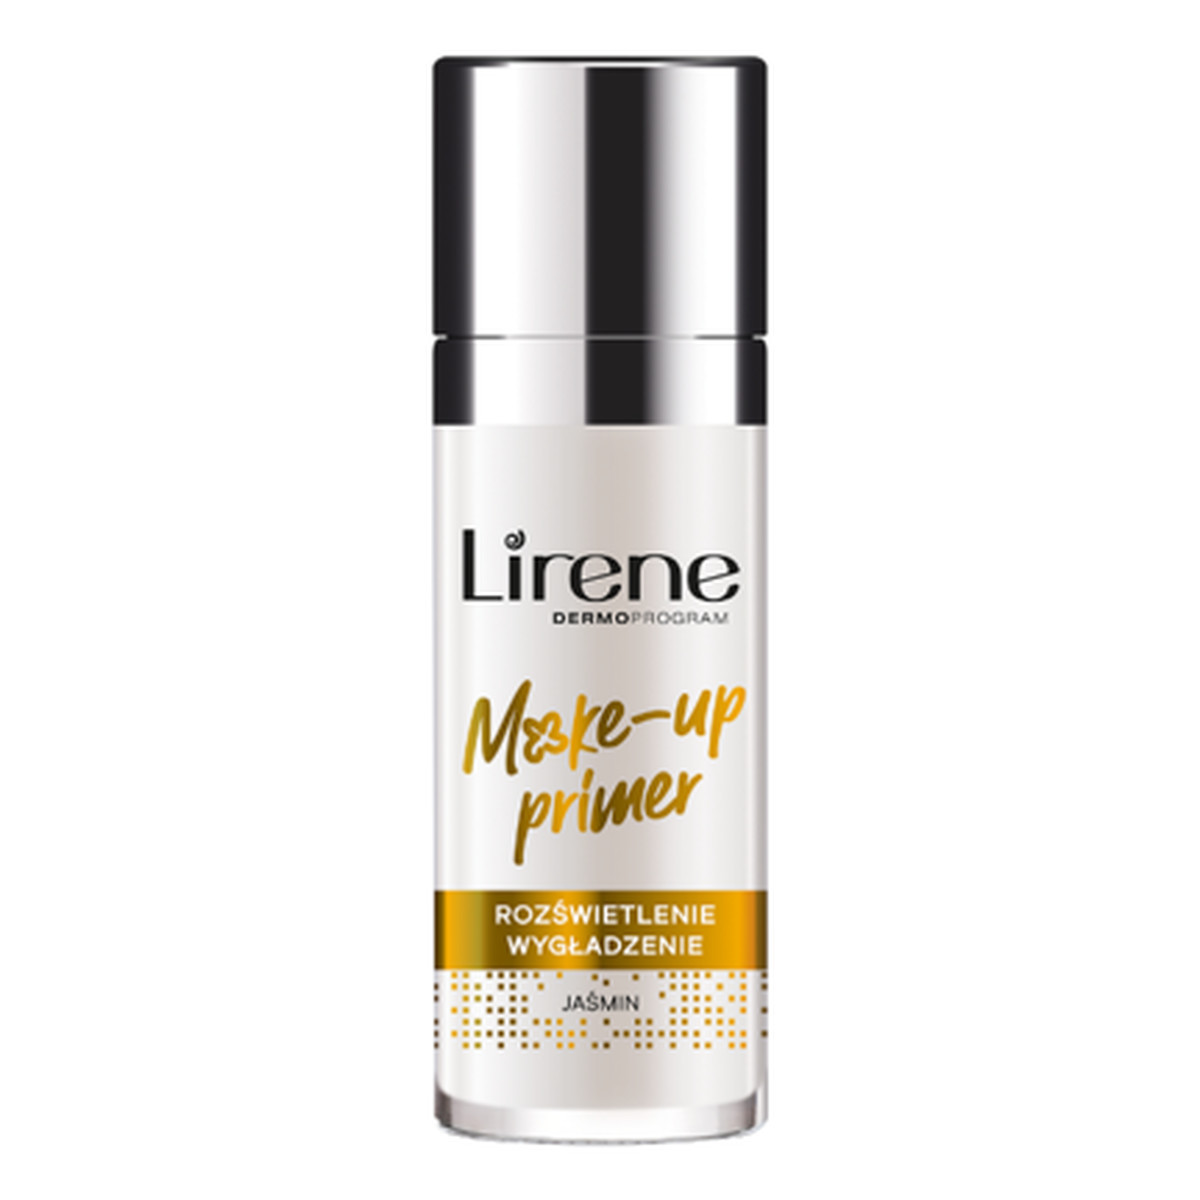 Lirene Make-up Primer - Rozświetlająco-wygładzająca Baza pod makijaż Jaśmin 30ml